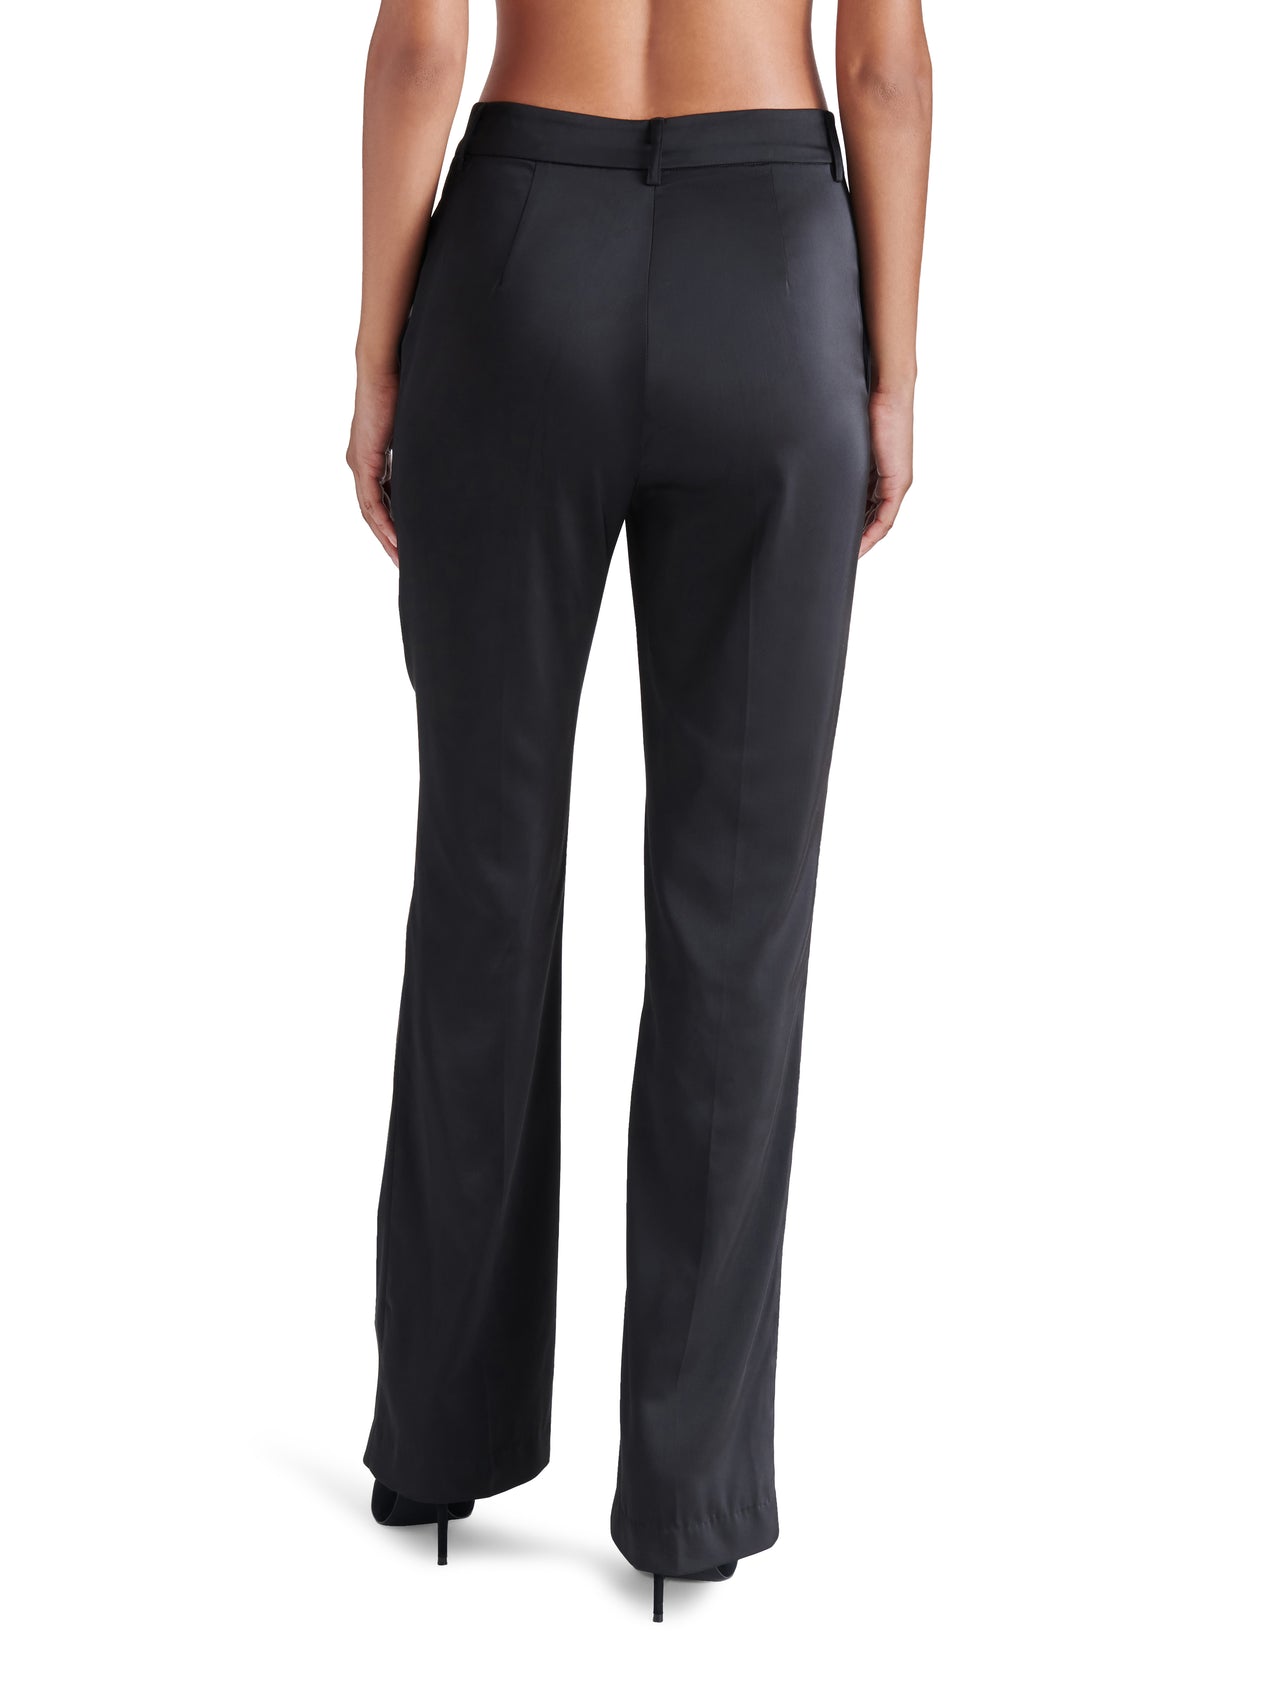 Mercer Black Satin Straight Leg Trouser Pant, Pant Bottom by Steve Madden | LIT Boutique